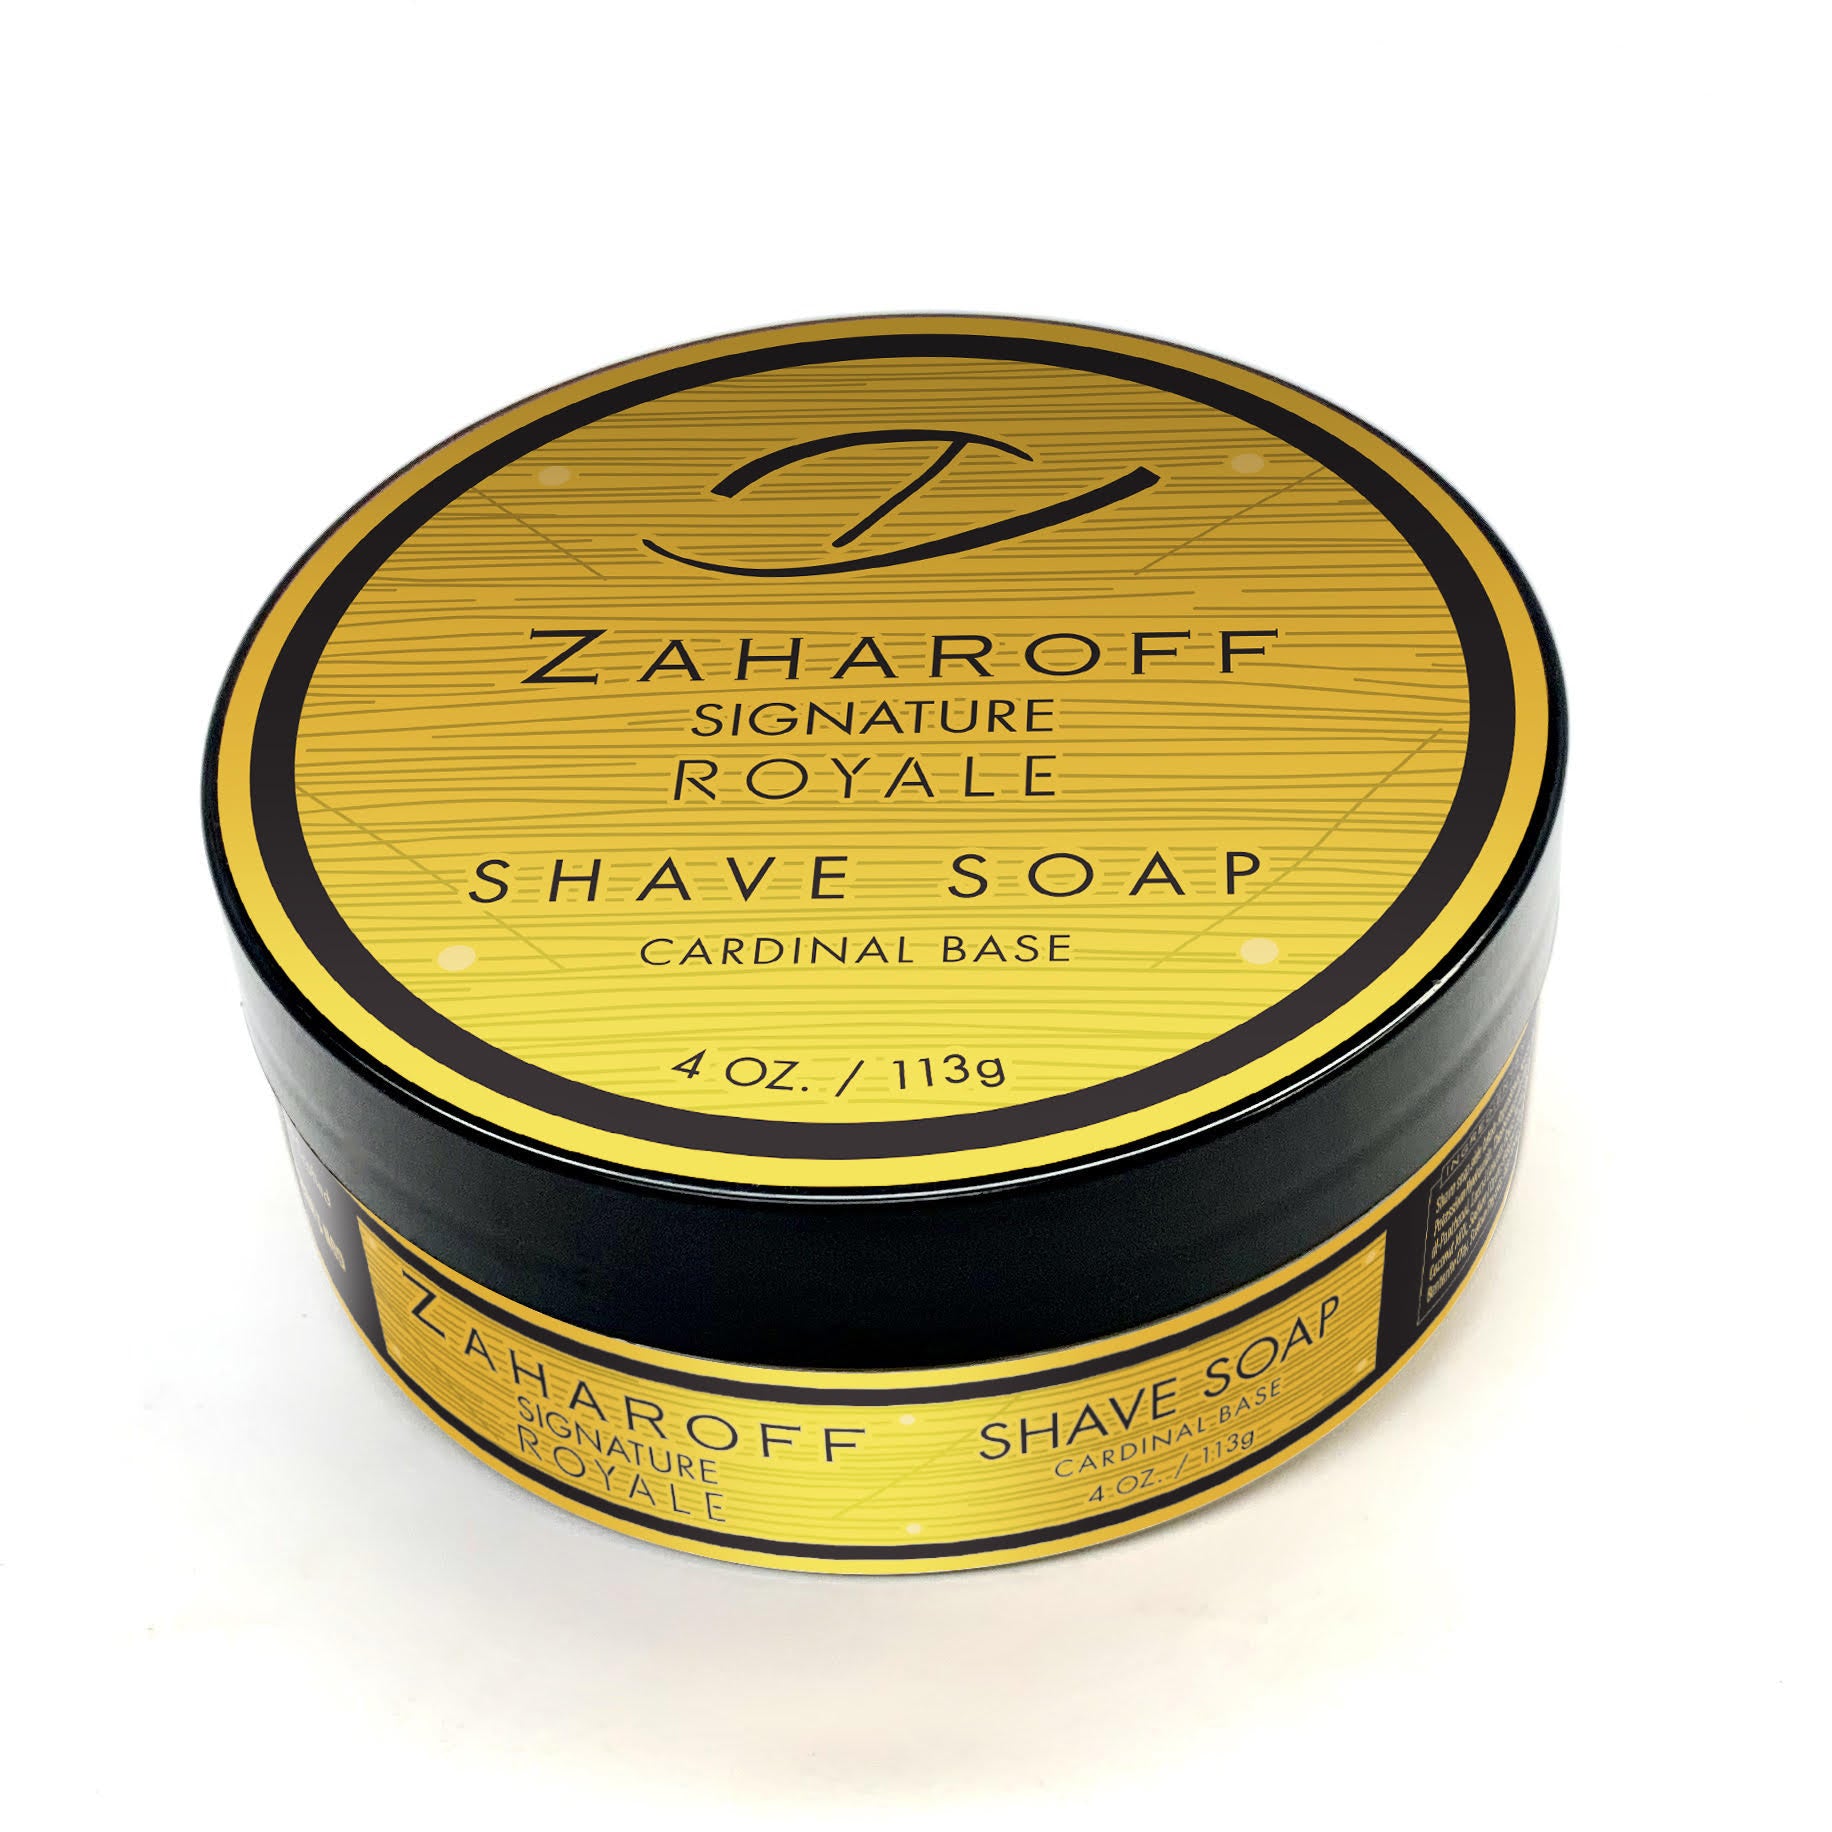 Zaharoff Signature Royale Shave Soap